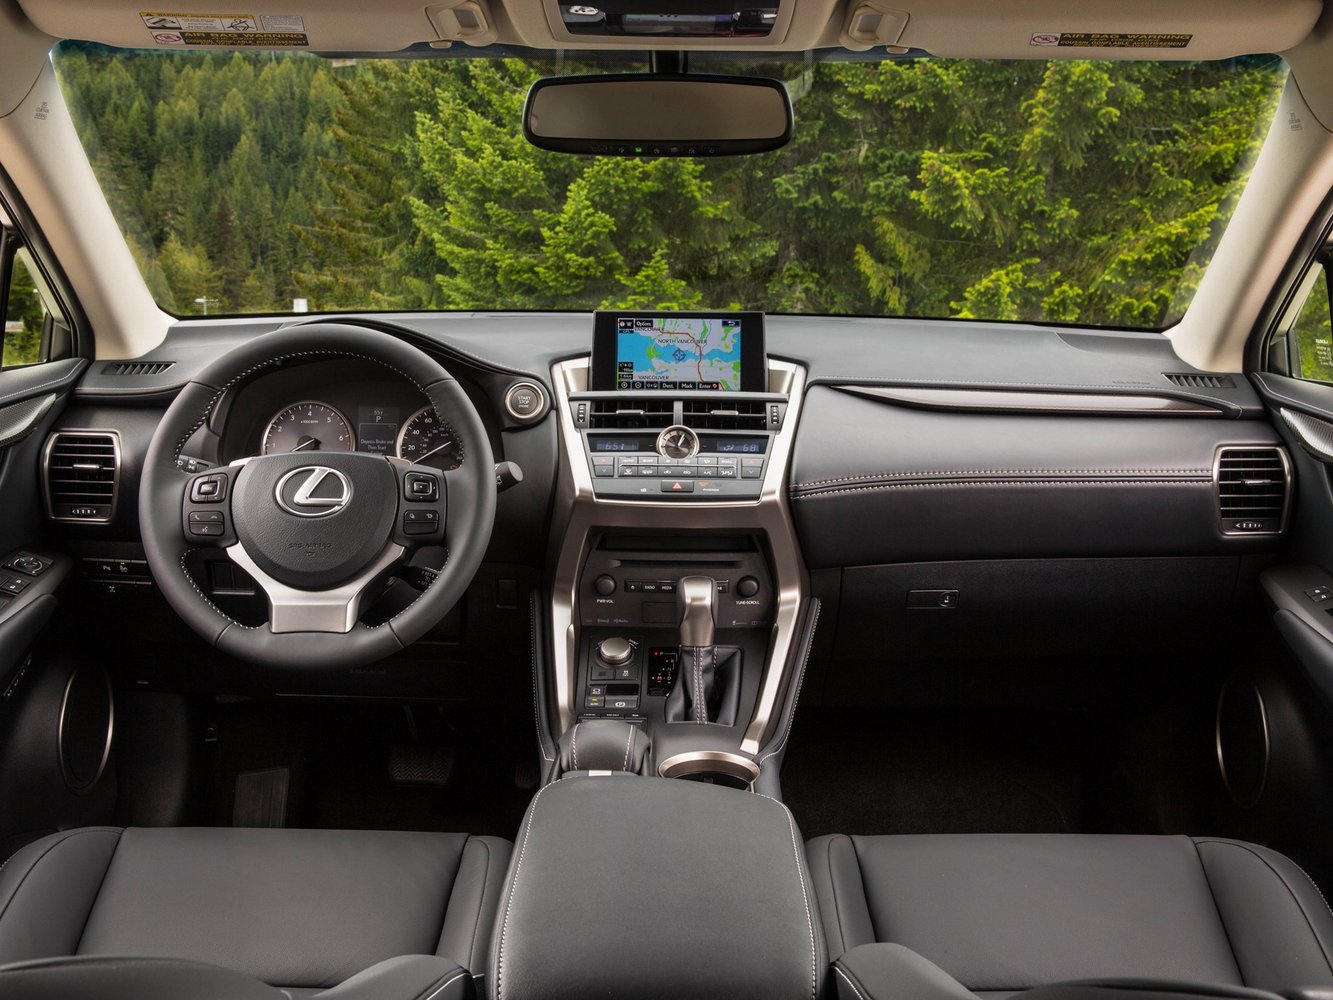 кроссовер Lexus NX 2014 - 2016г выпуска модификация F Sport Premium 2.5 CVT (155 л.с.) 4×4